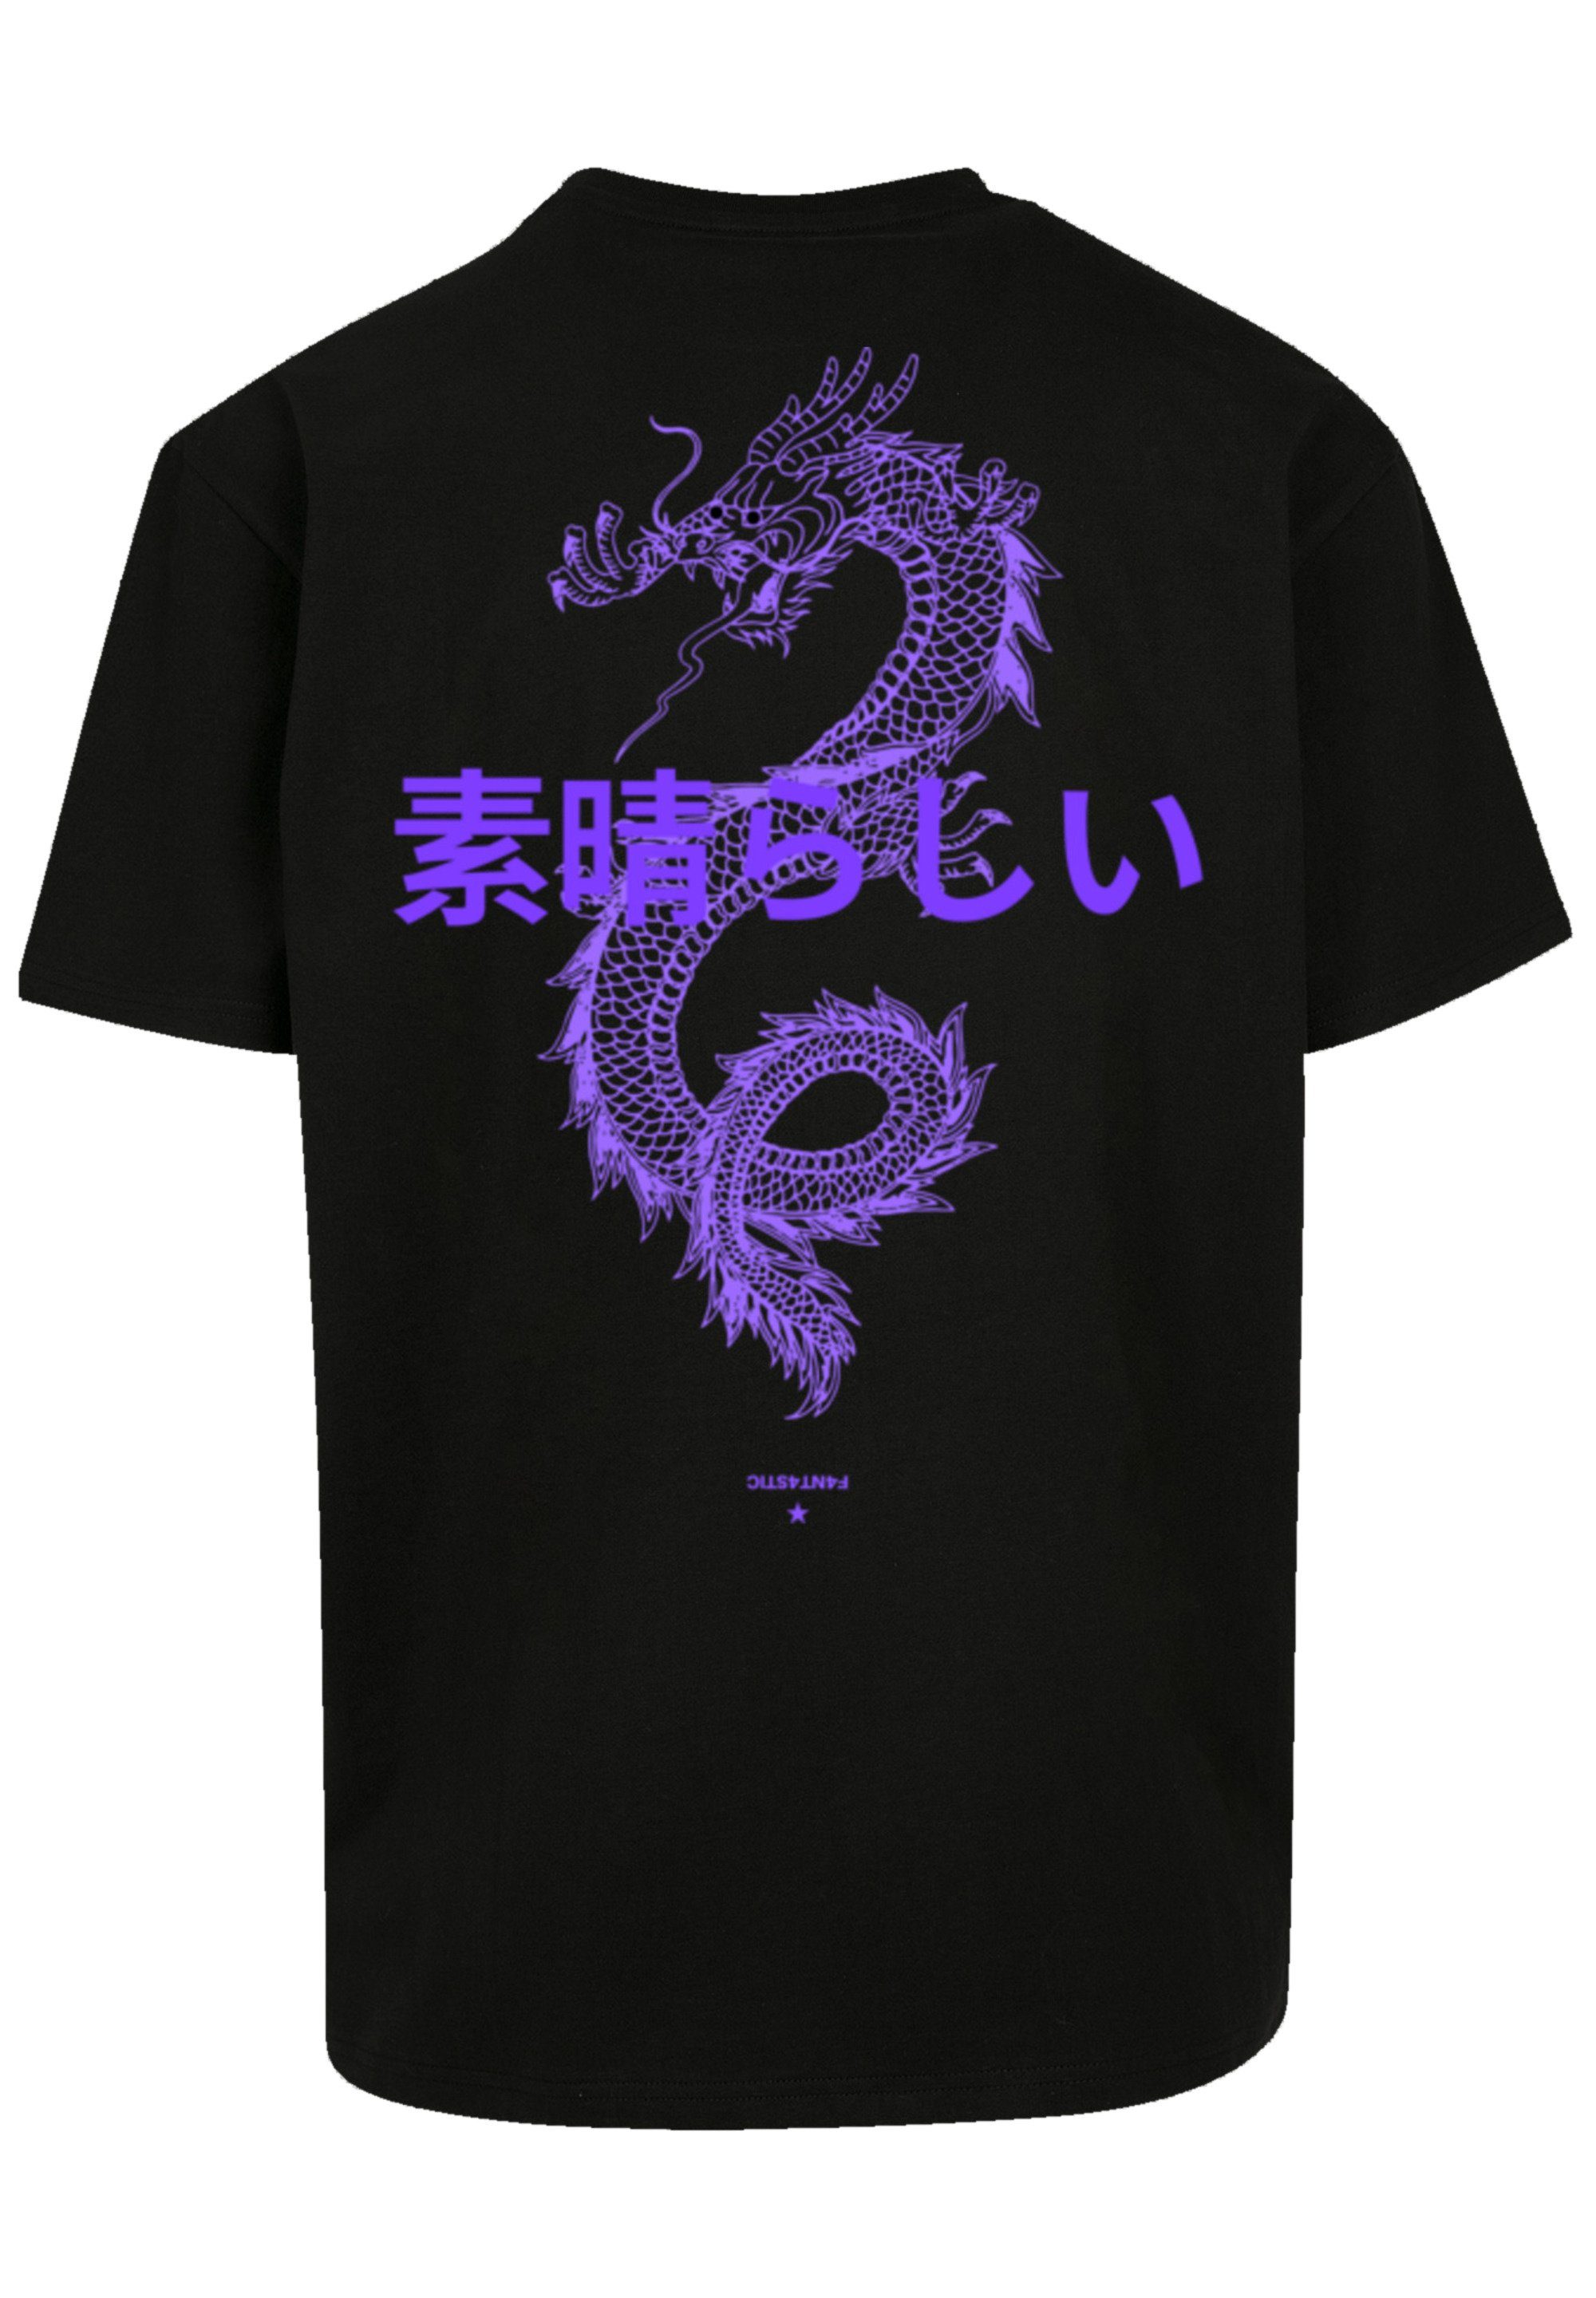 F4NT4STIC T-Shirt PLUS SIZE Dragon Print, eine Drache weit Fällt Japan kleiner aus, bitte Größe bestellen